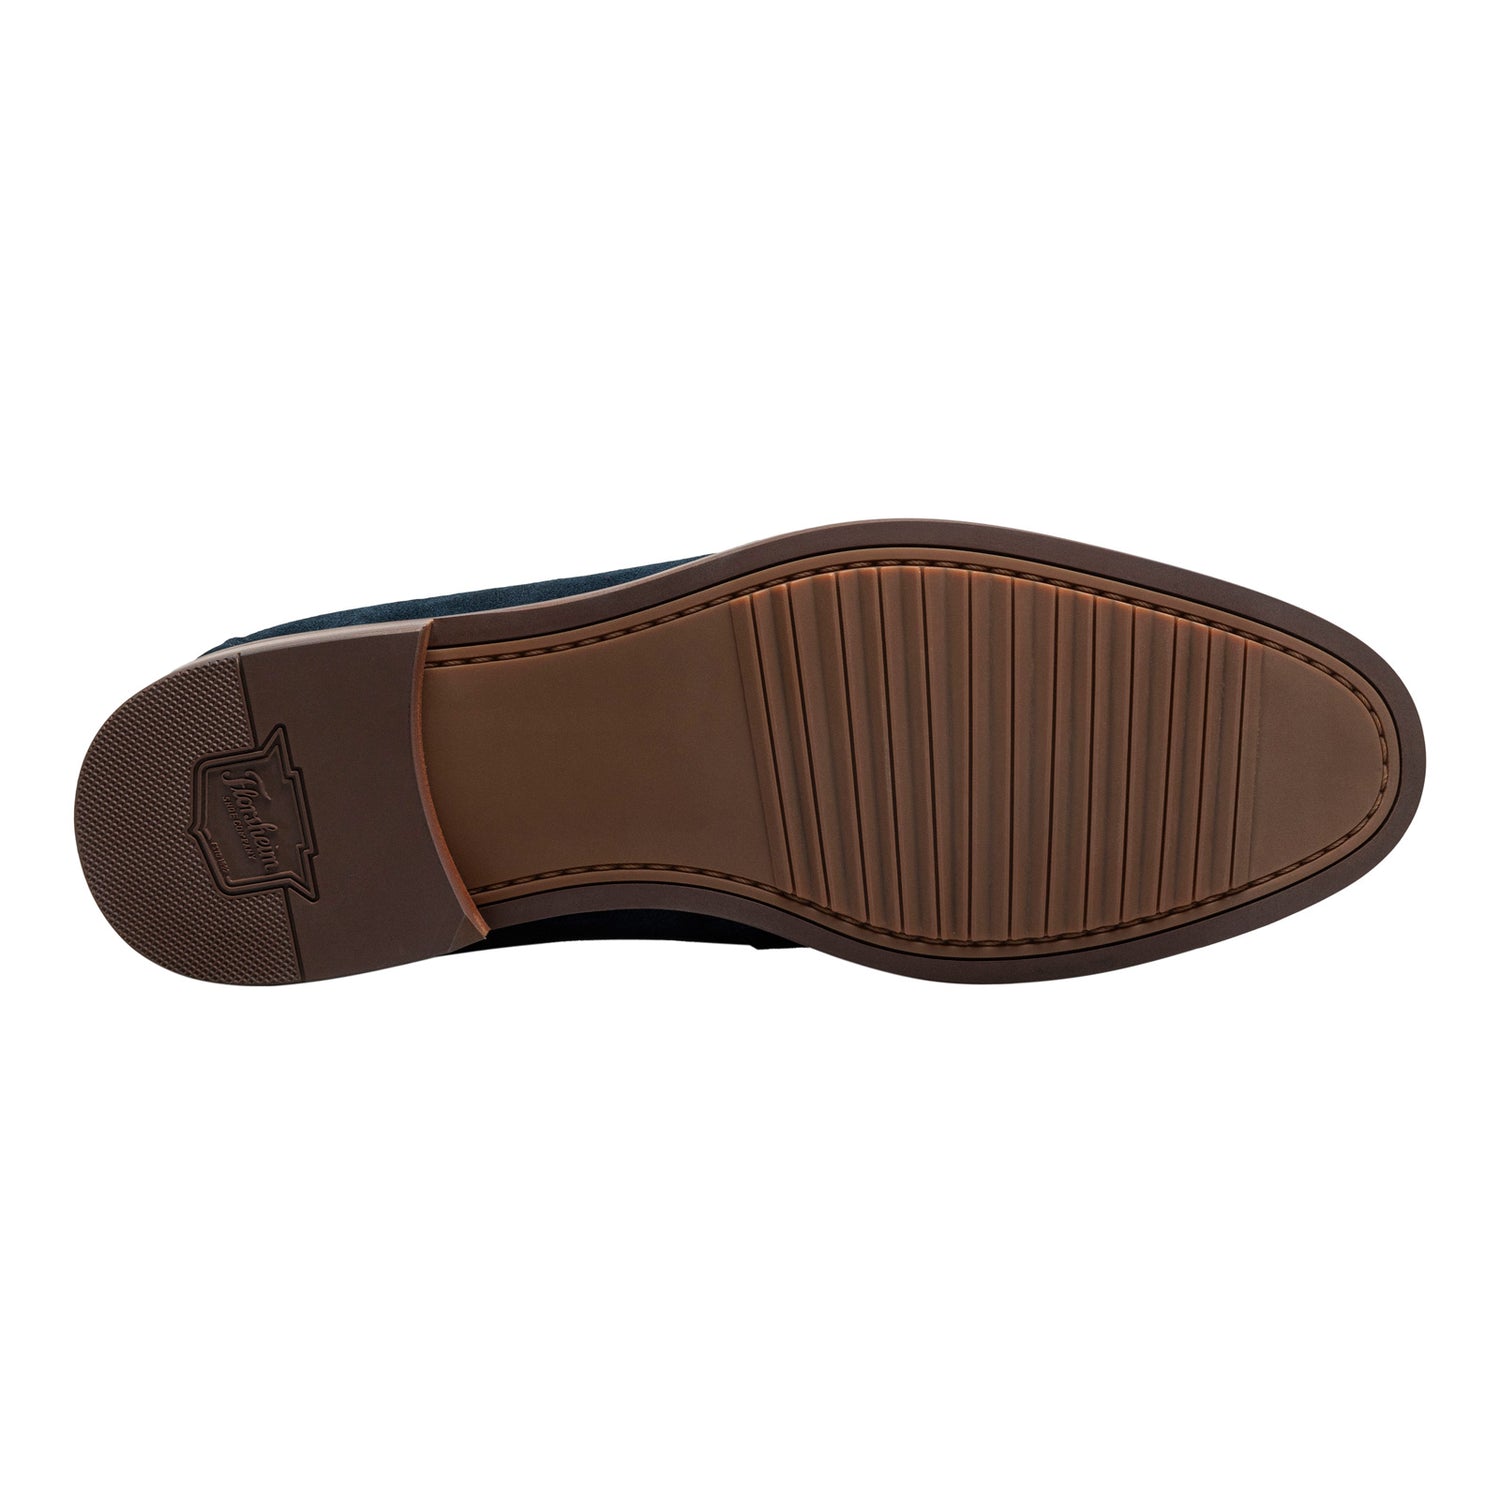 Peltz Shoes  Men's Florsheim Rucci Moc Toe Penny Loafer Navy Suede 13409-415